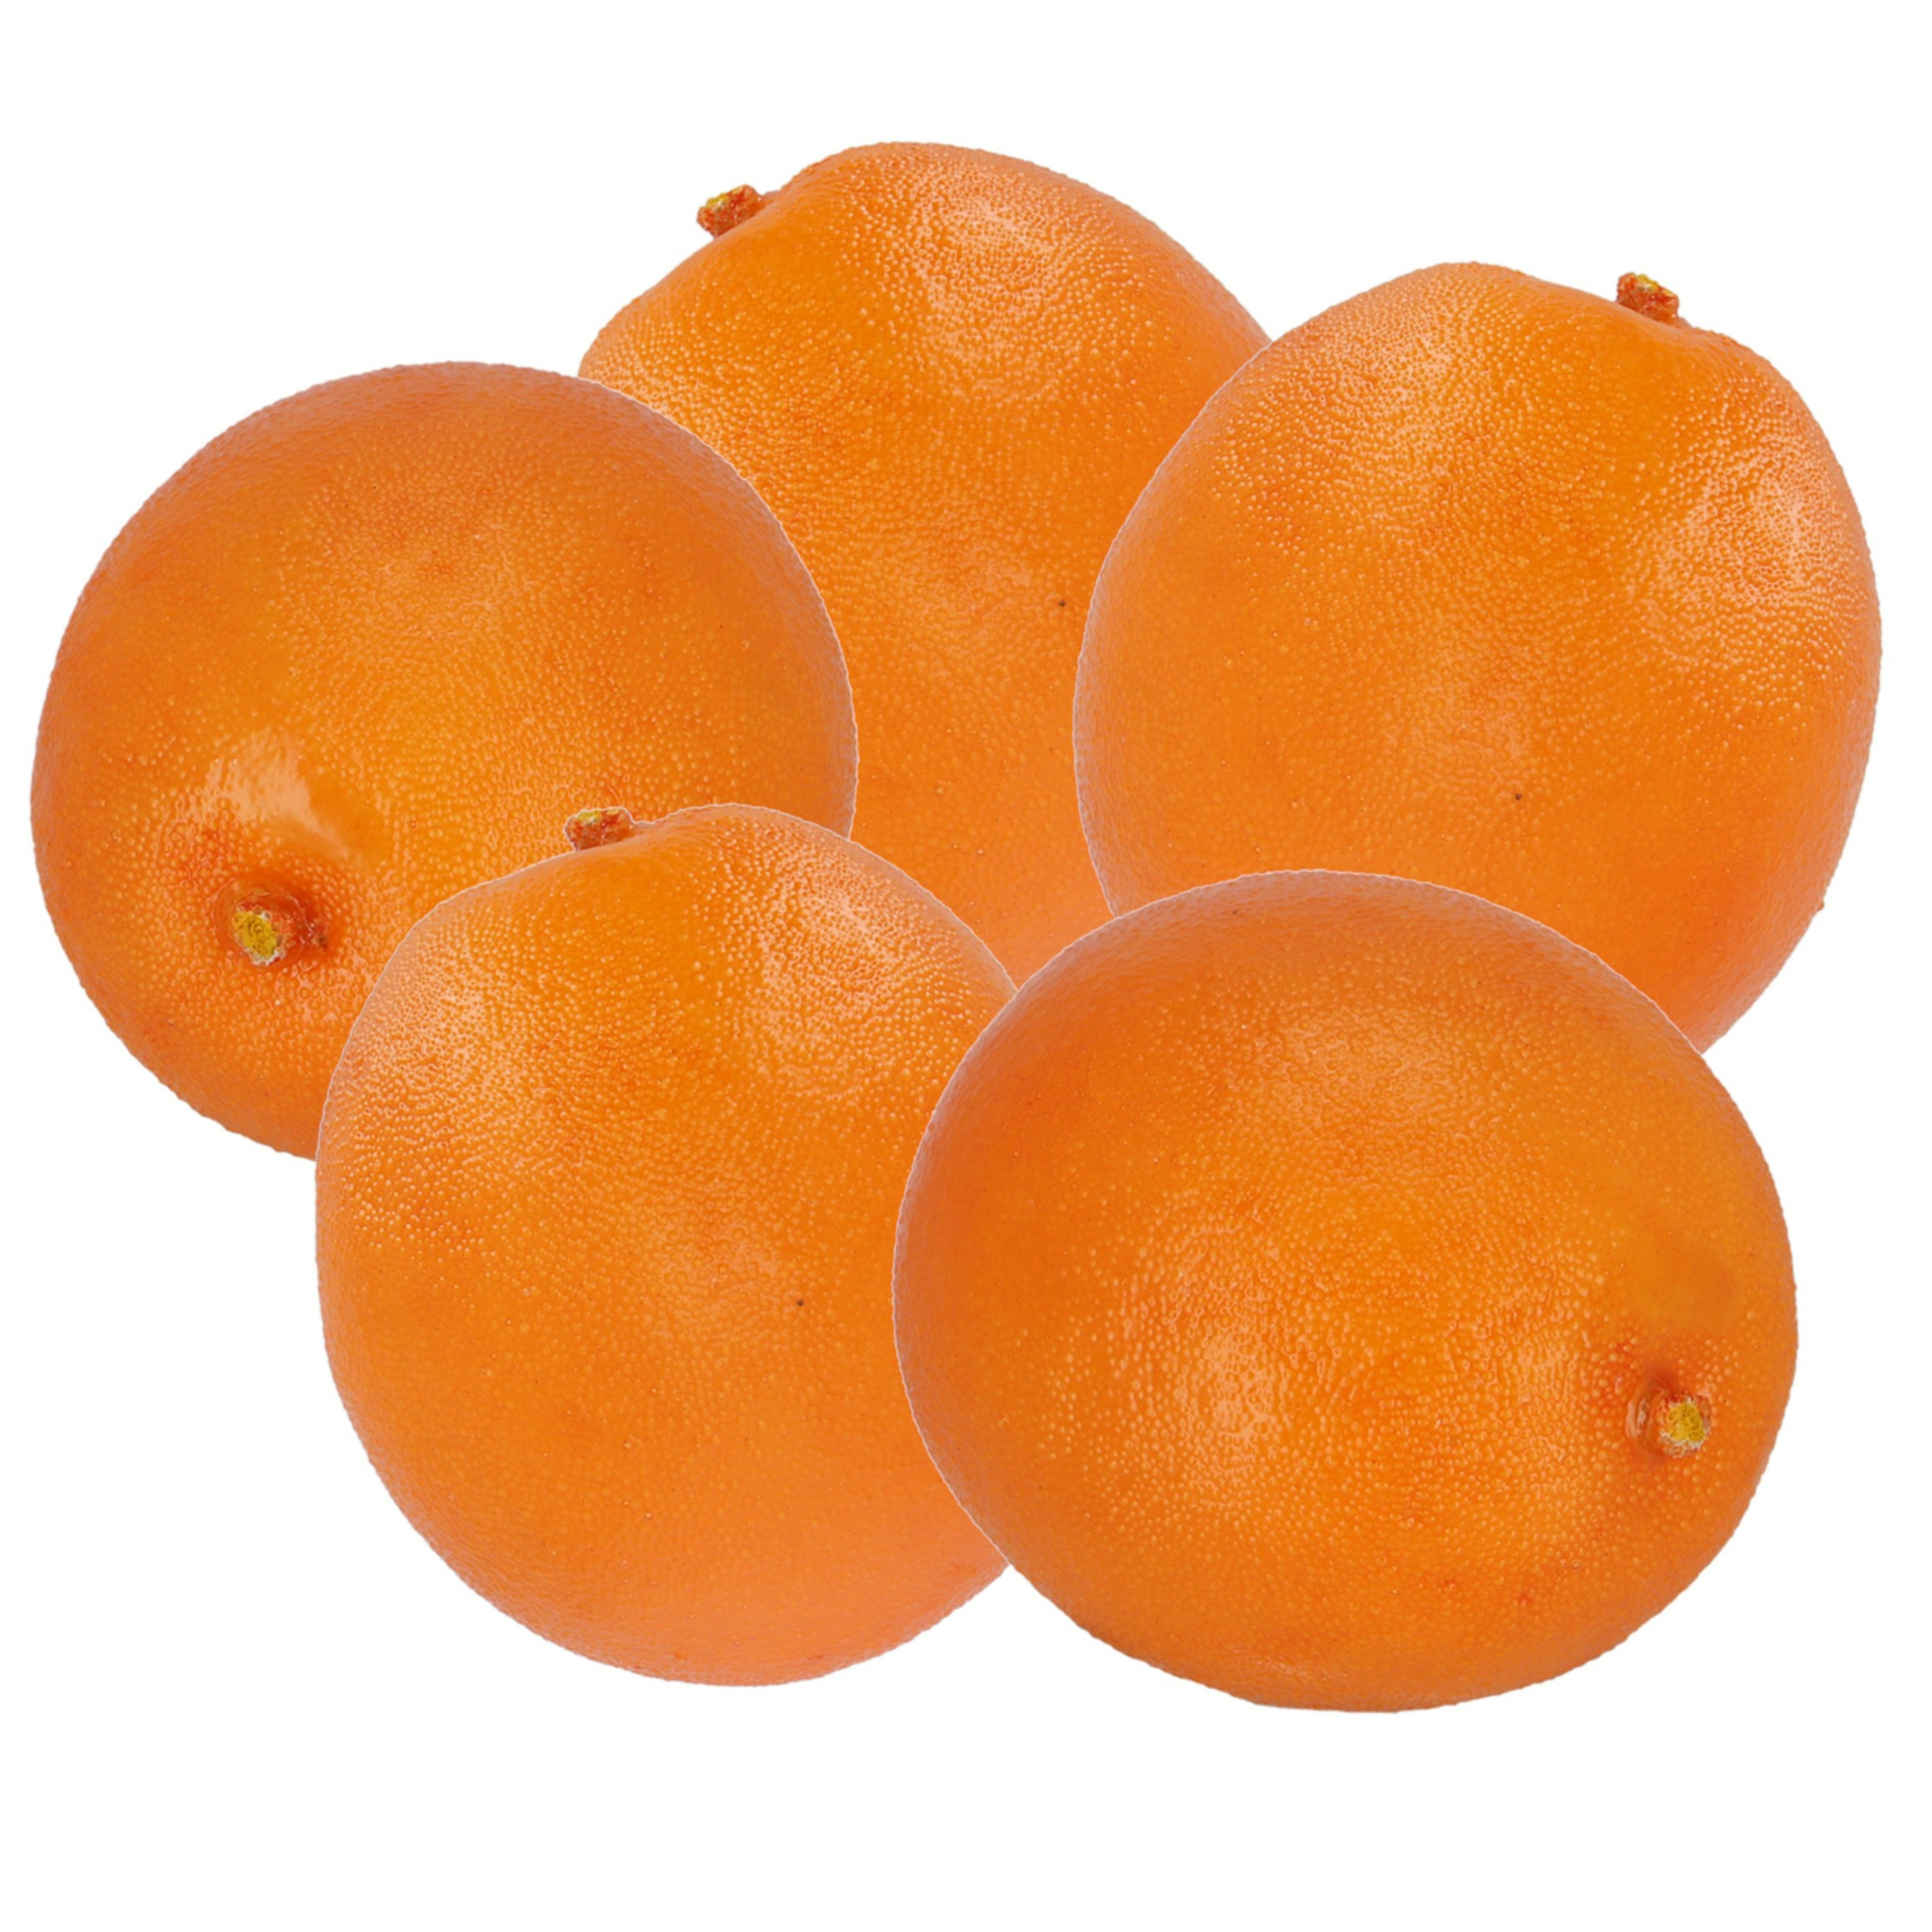 Esschert Design kunstfruit decofruit - 5x - sinaasappel/sinaasappels - ongeveer 7.5 cm - oranje -